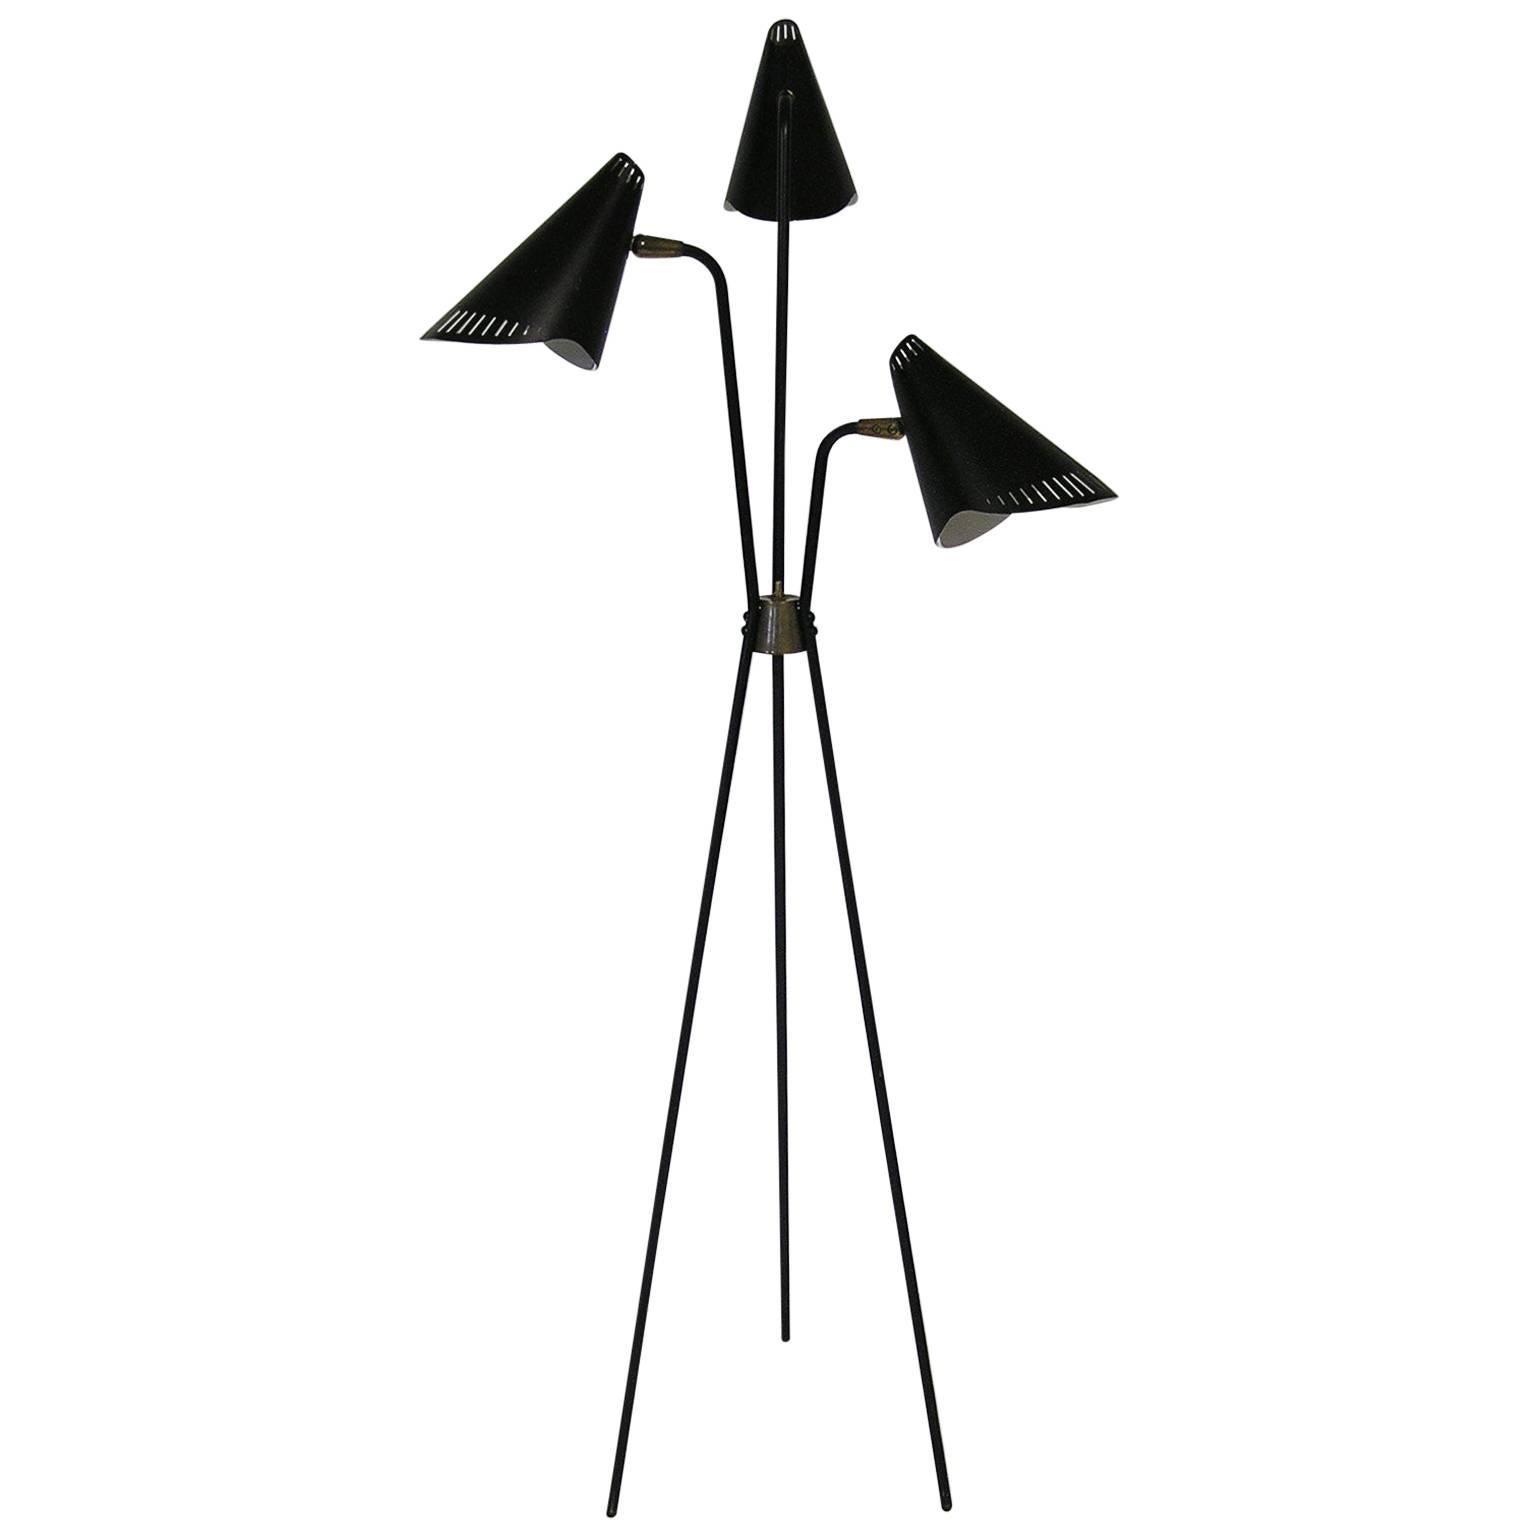 Rare 1950s Gerald Thurston Black Tripod-Leg Floor Lamp by Lightolier For Sale